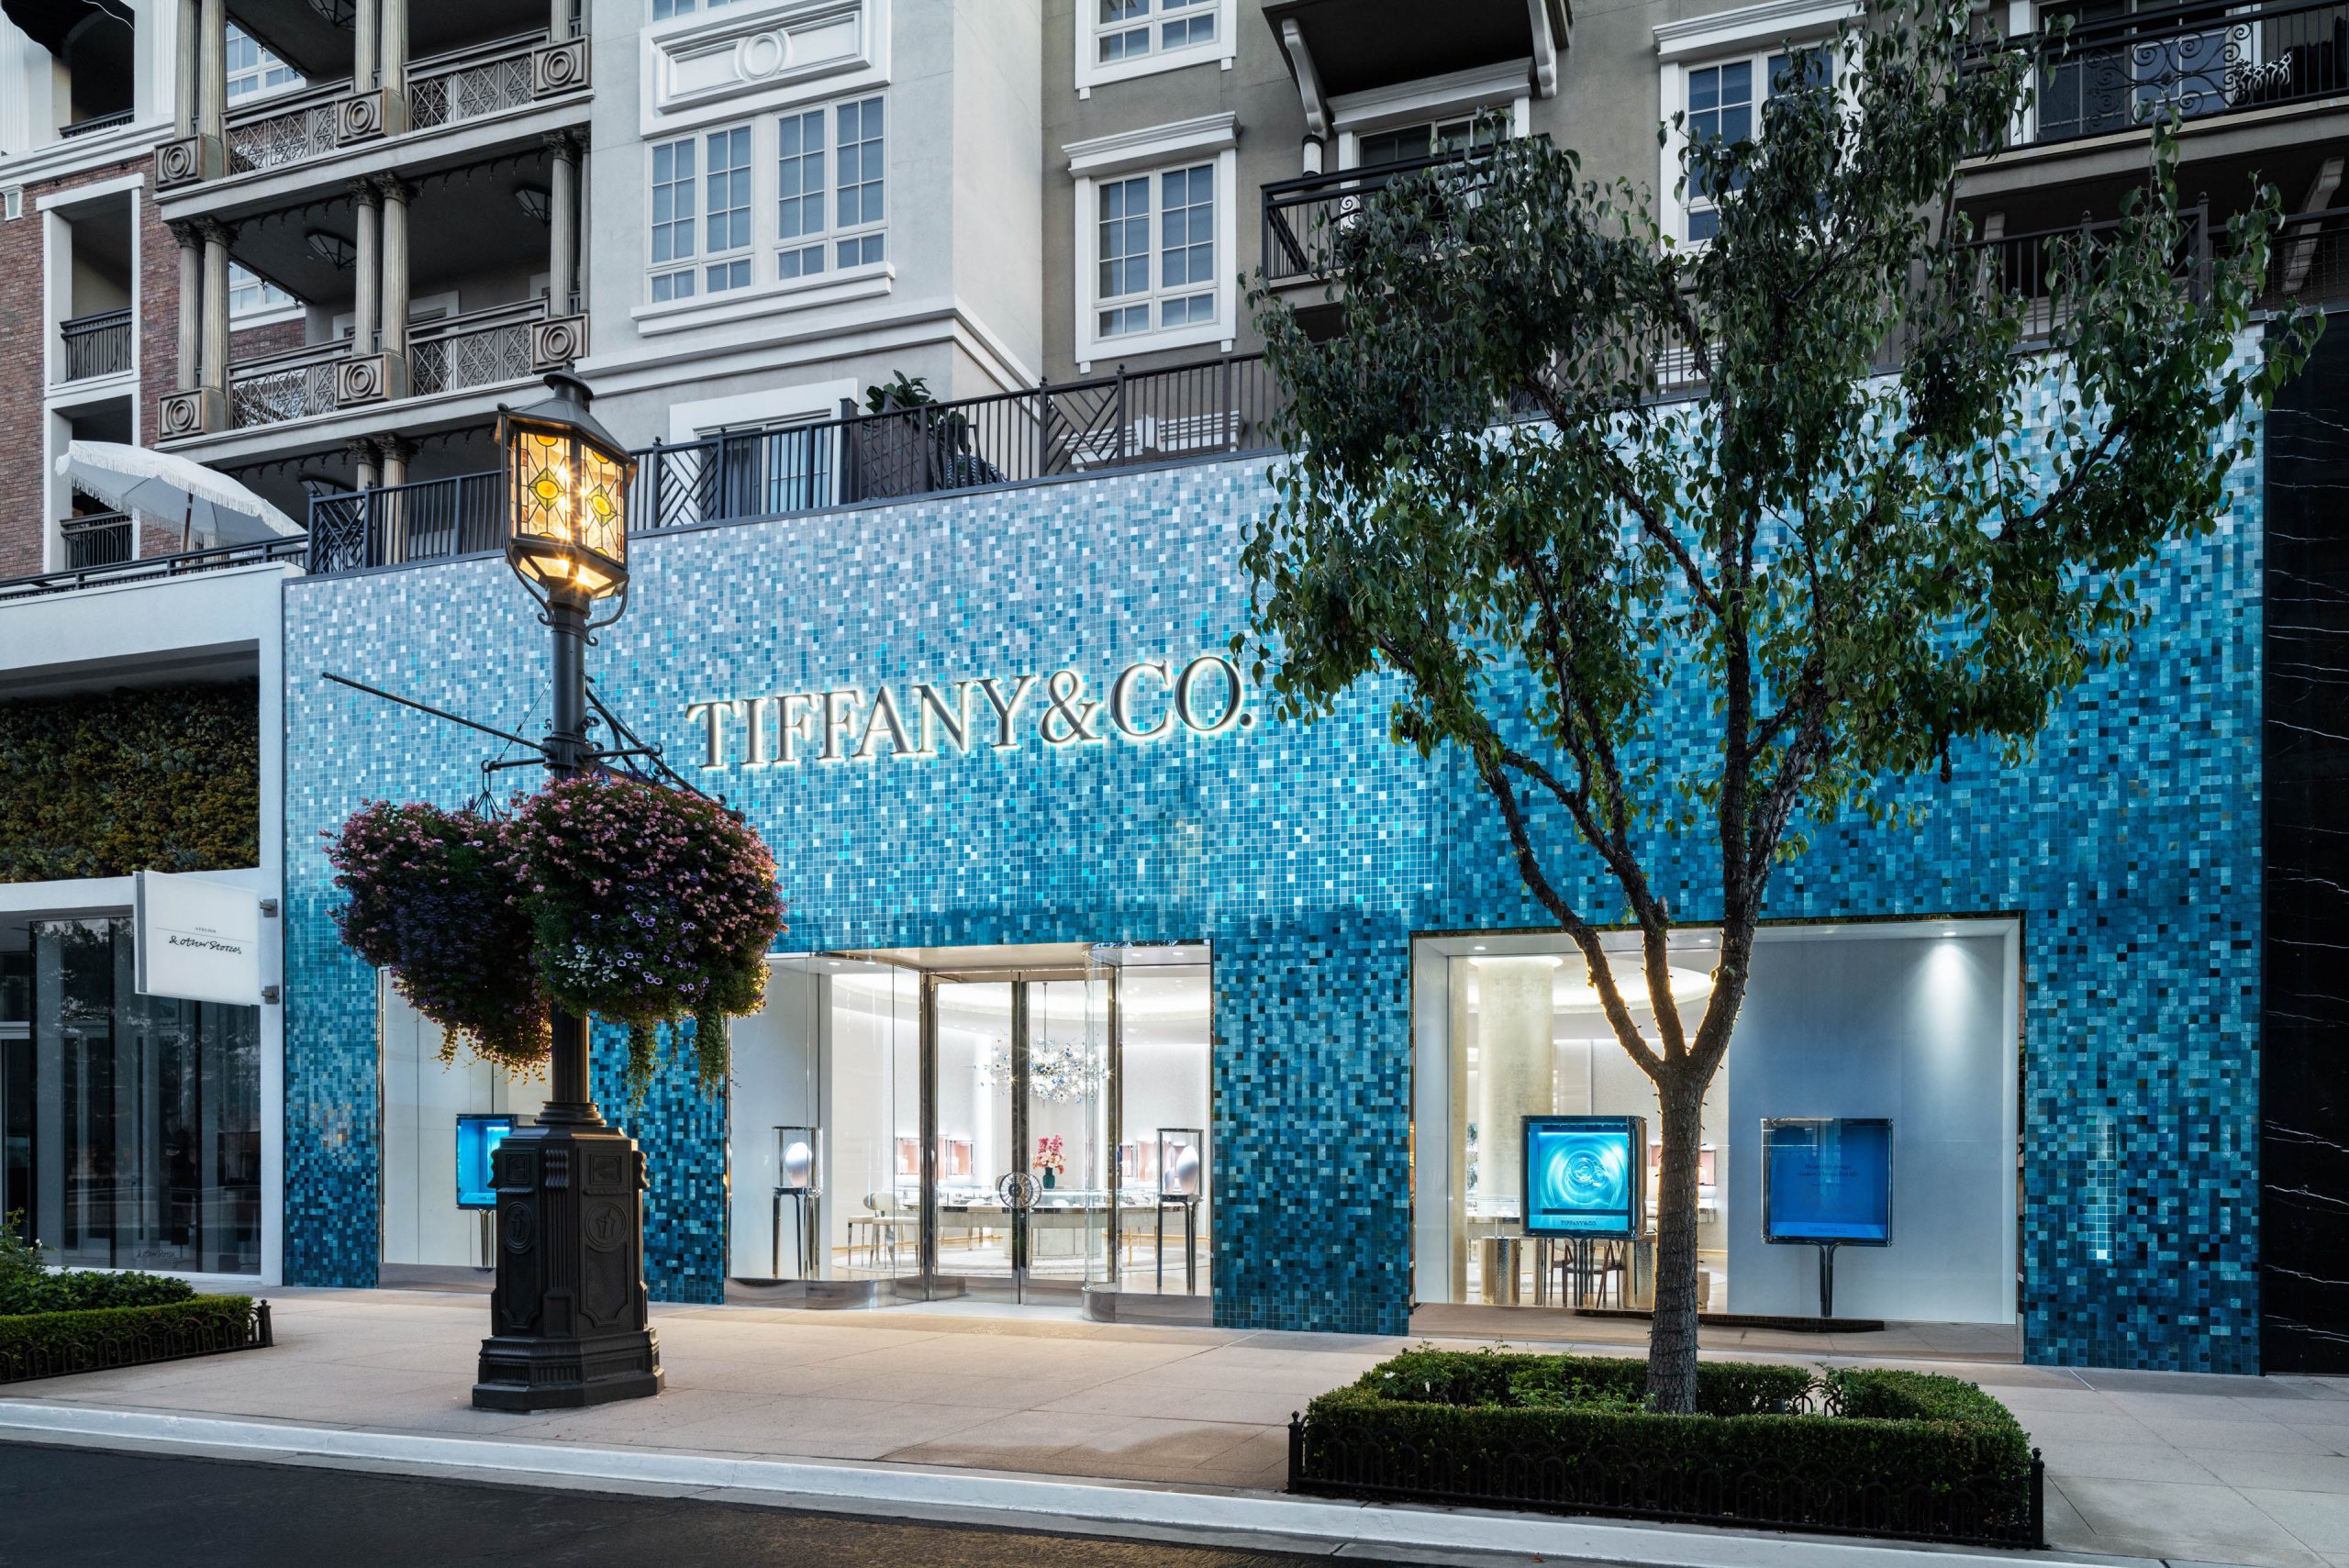 Tiffany & Co. Americana at Brand